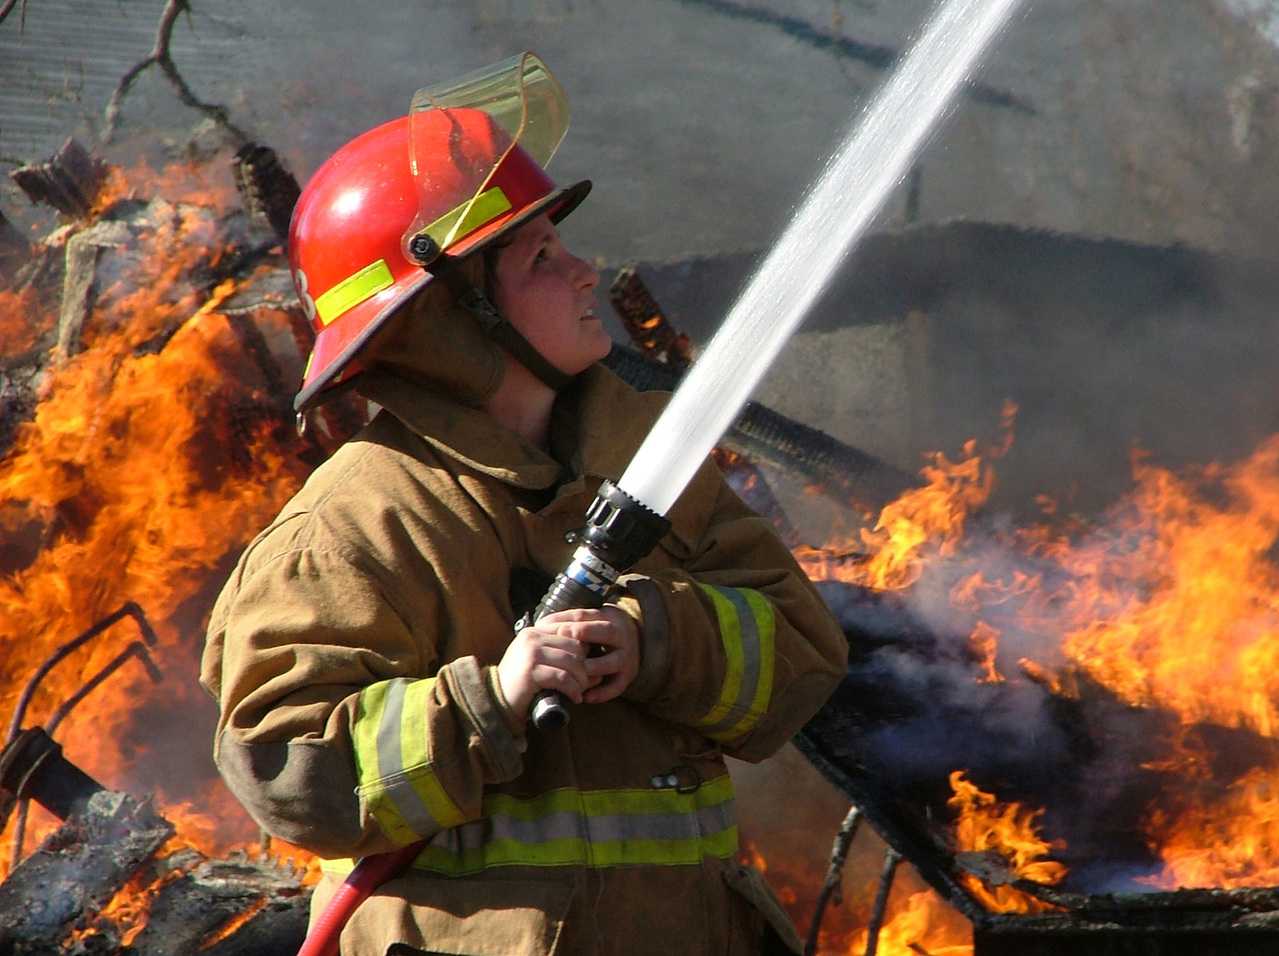 О выживании на пожаре: пост пожарной безопасности